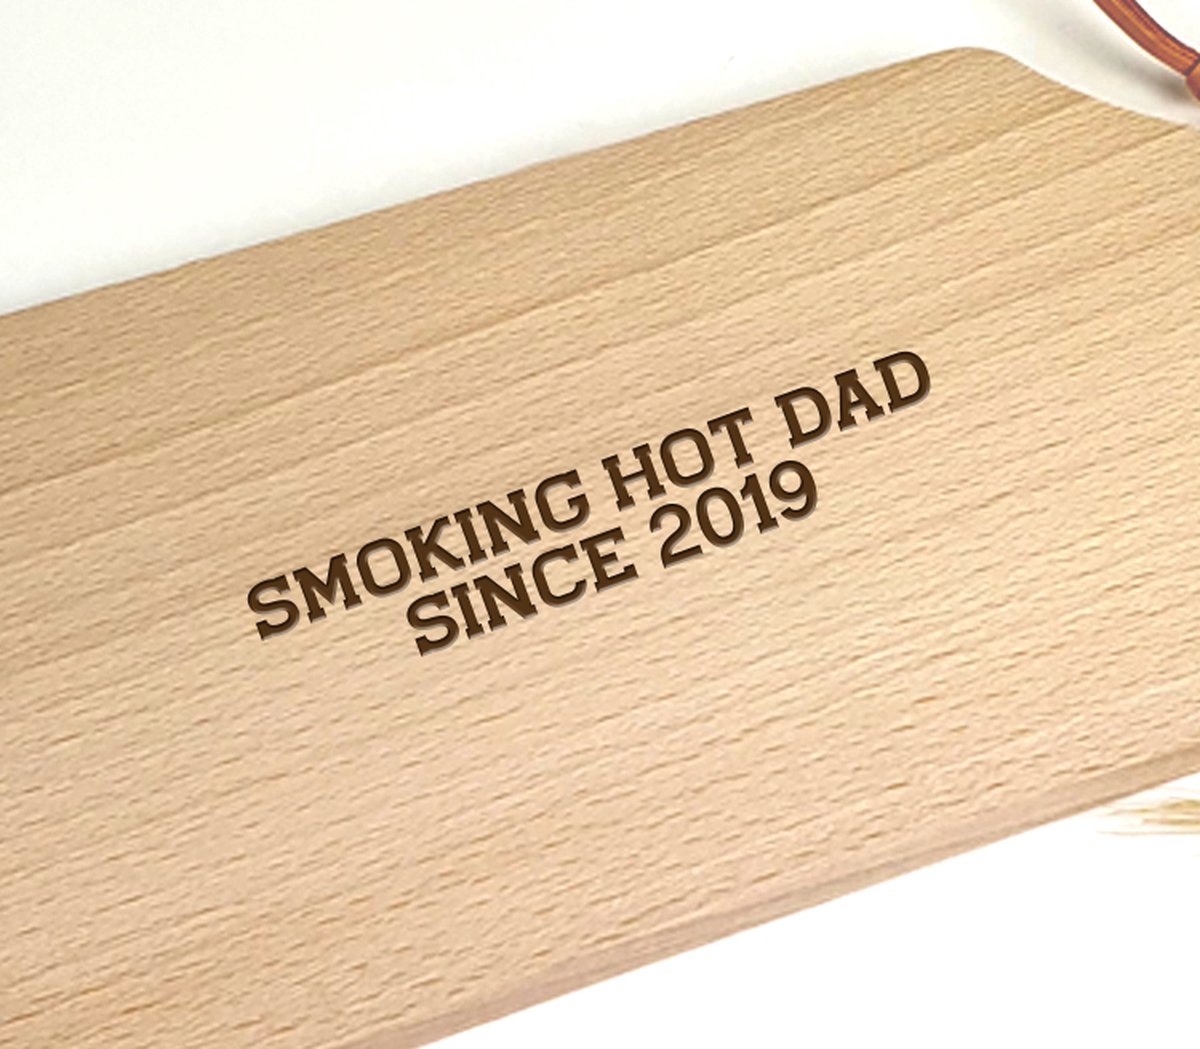 Tapasplankje hout - Serveerplankje - Vaderdagcadeau - Cadeau voor papa - Smoking Dad 2019 - Cadeau papa - Vaderdag - Serveerplank - Tapasplank - Cadeau vaderdag